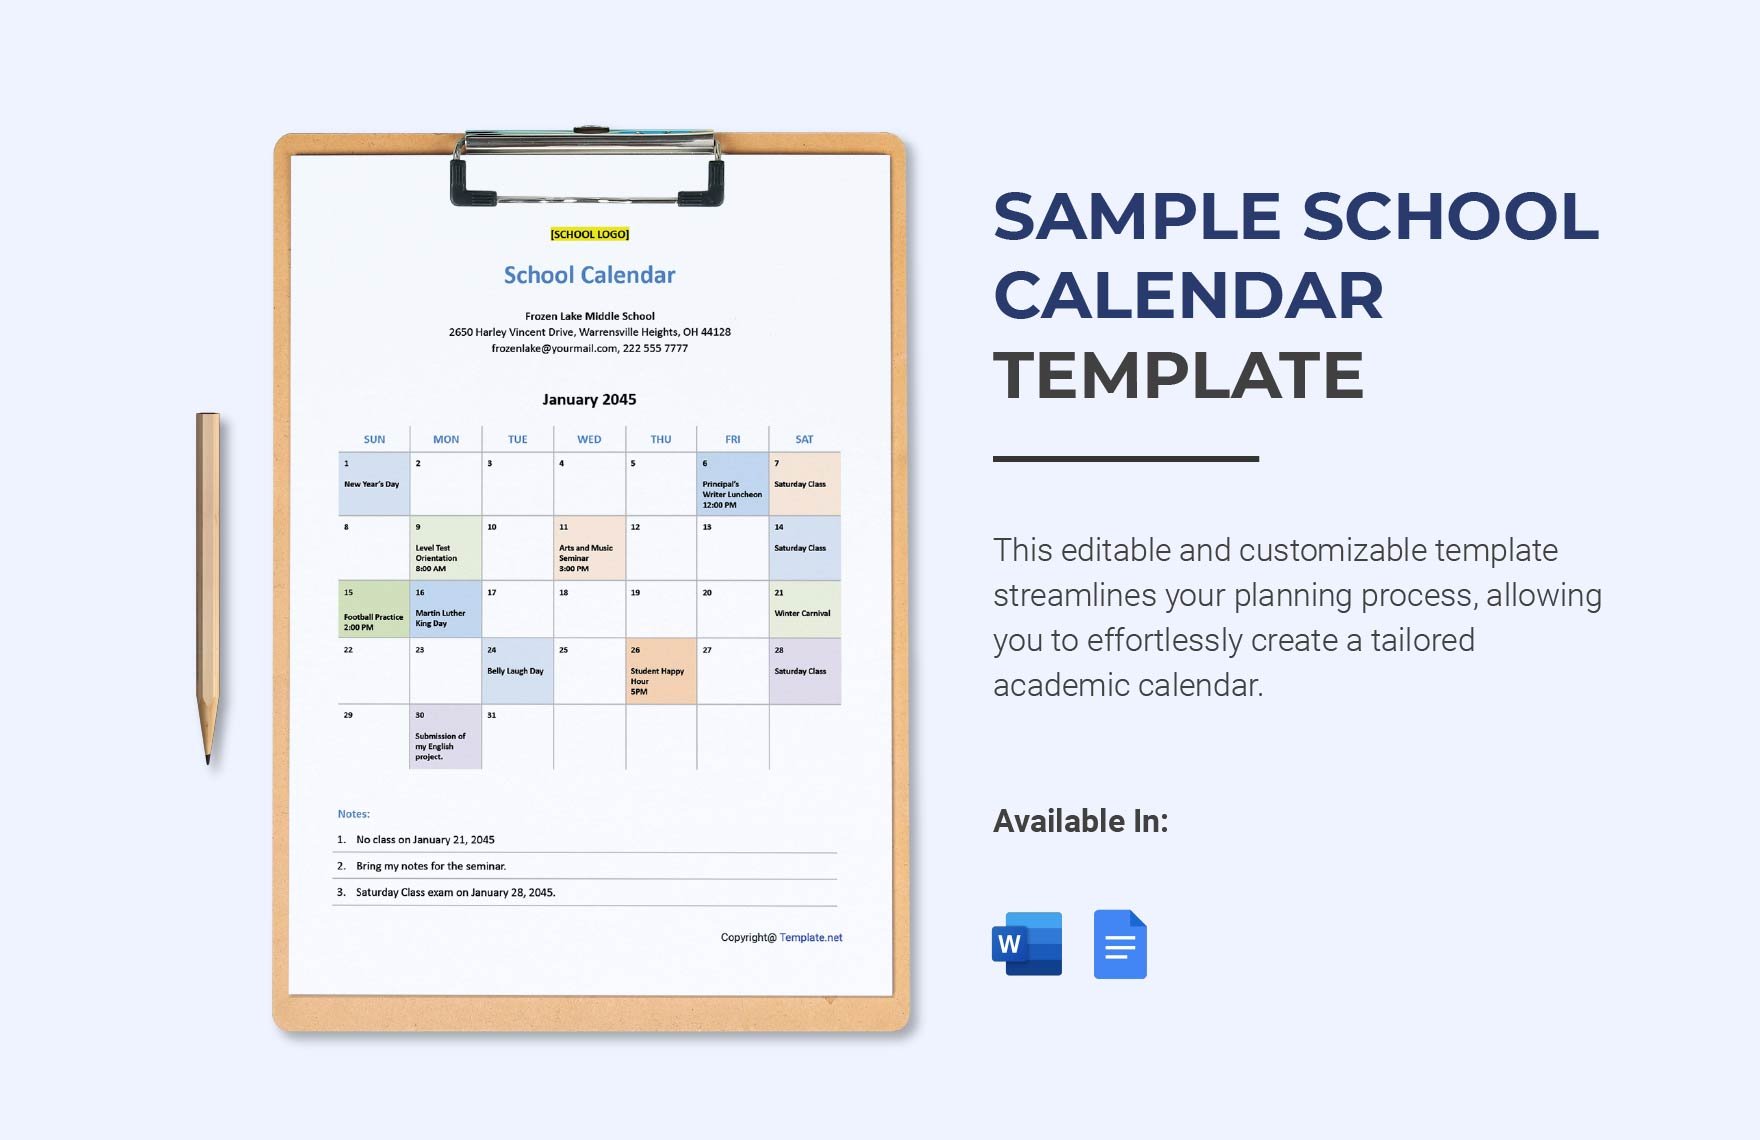 Sample School Calendar Template